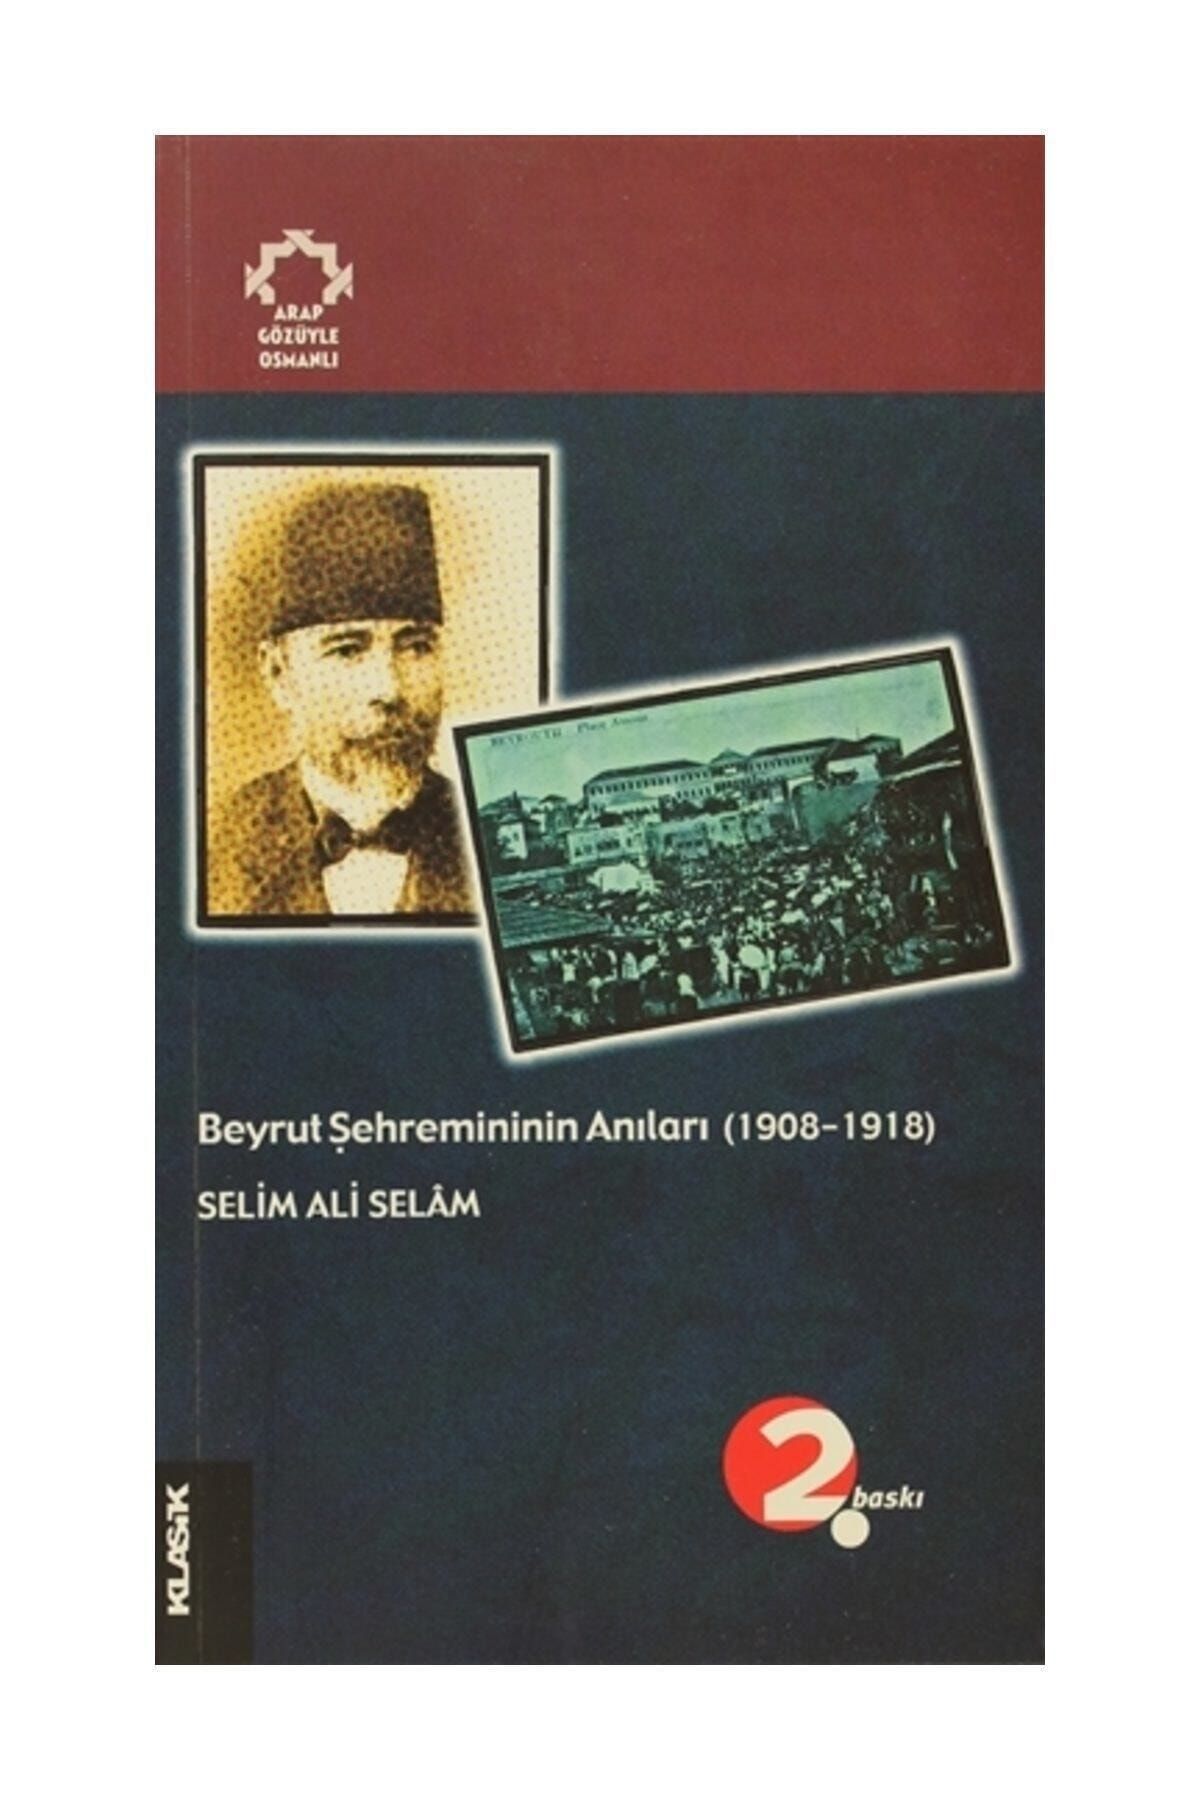 Klasik Yayınları Beyrut Şehremininin Anıları (1908-1918) Arapların Gözüyle Osmanlı - Selim Ali Selam